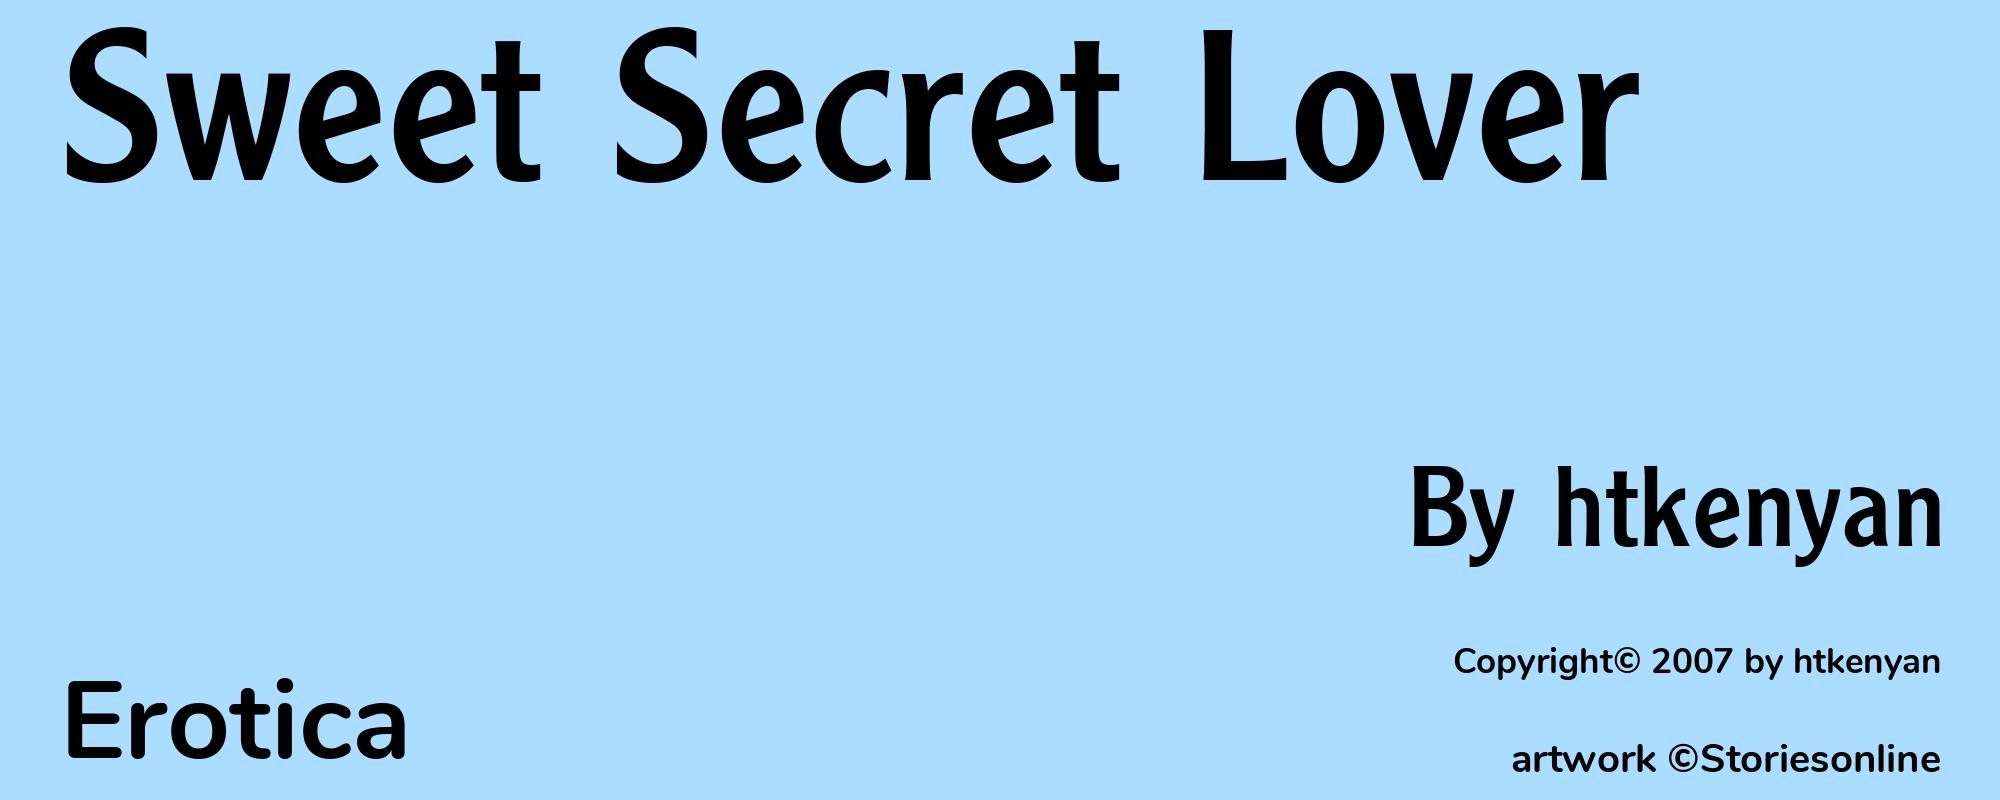 Sweet Secret Lover - Cover